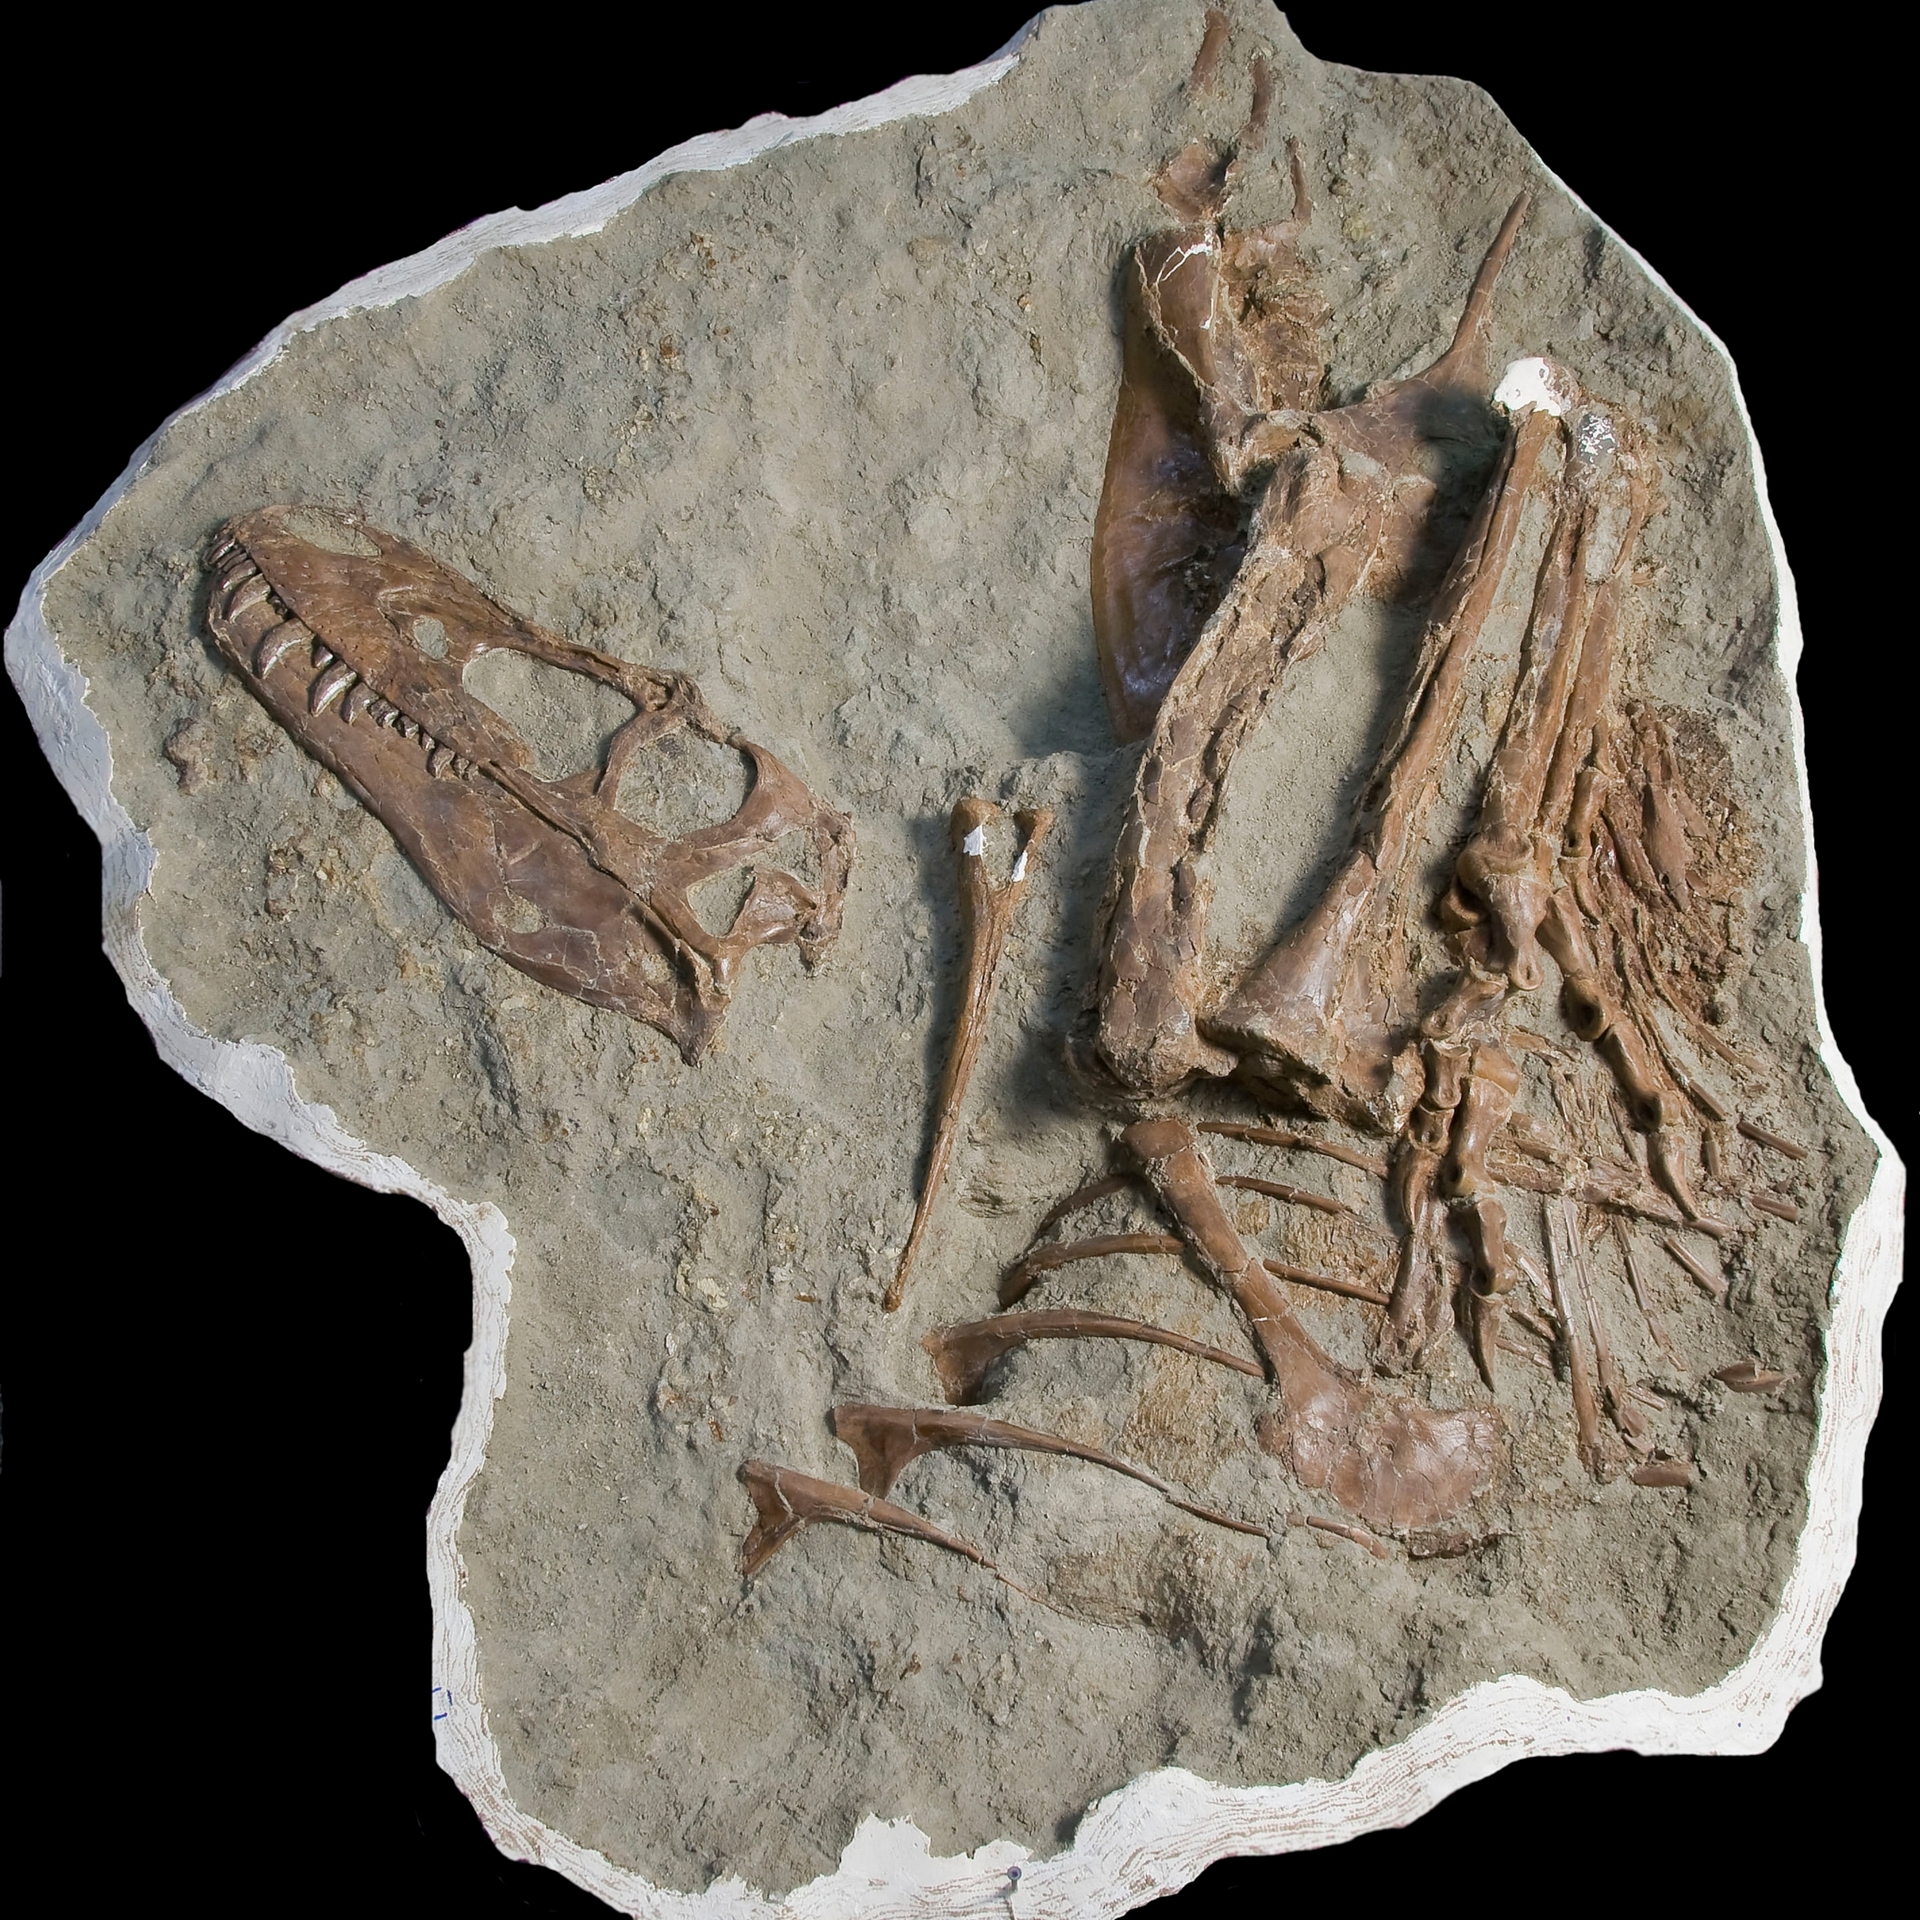 蛇髮女怪龍保存極其完好的遺骸也揭曉了牠最後一頓晚餐的遺骸。PHOTOGRAPH BY ROYAL TYRRELL MUSEUM OF PALAEONTOLOGY 